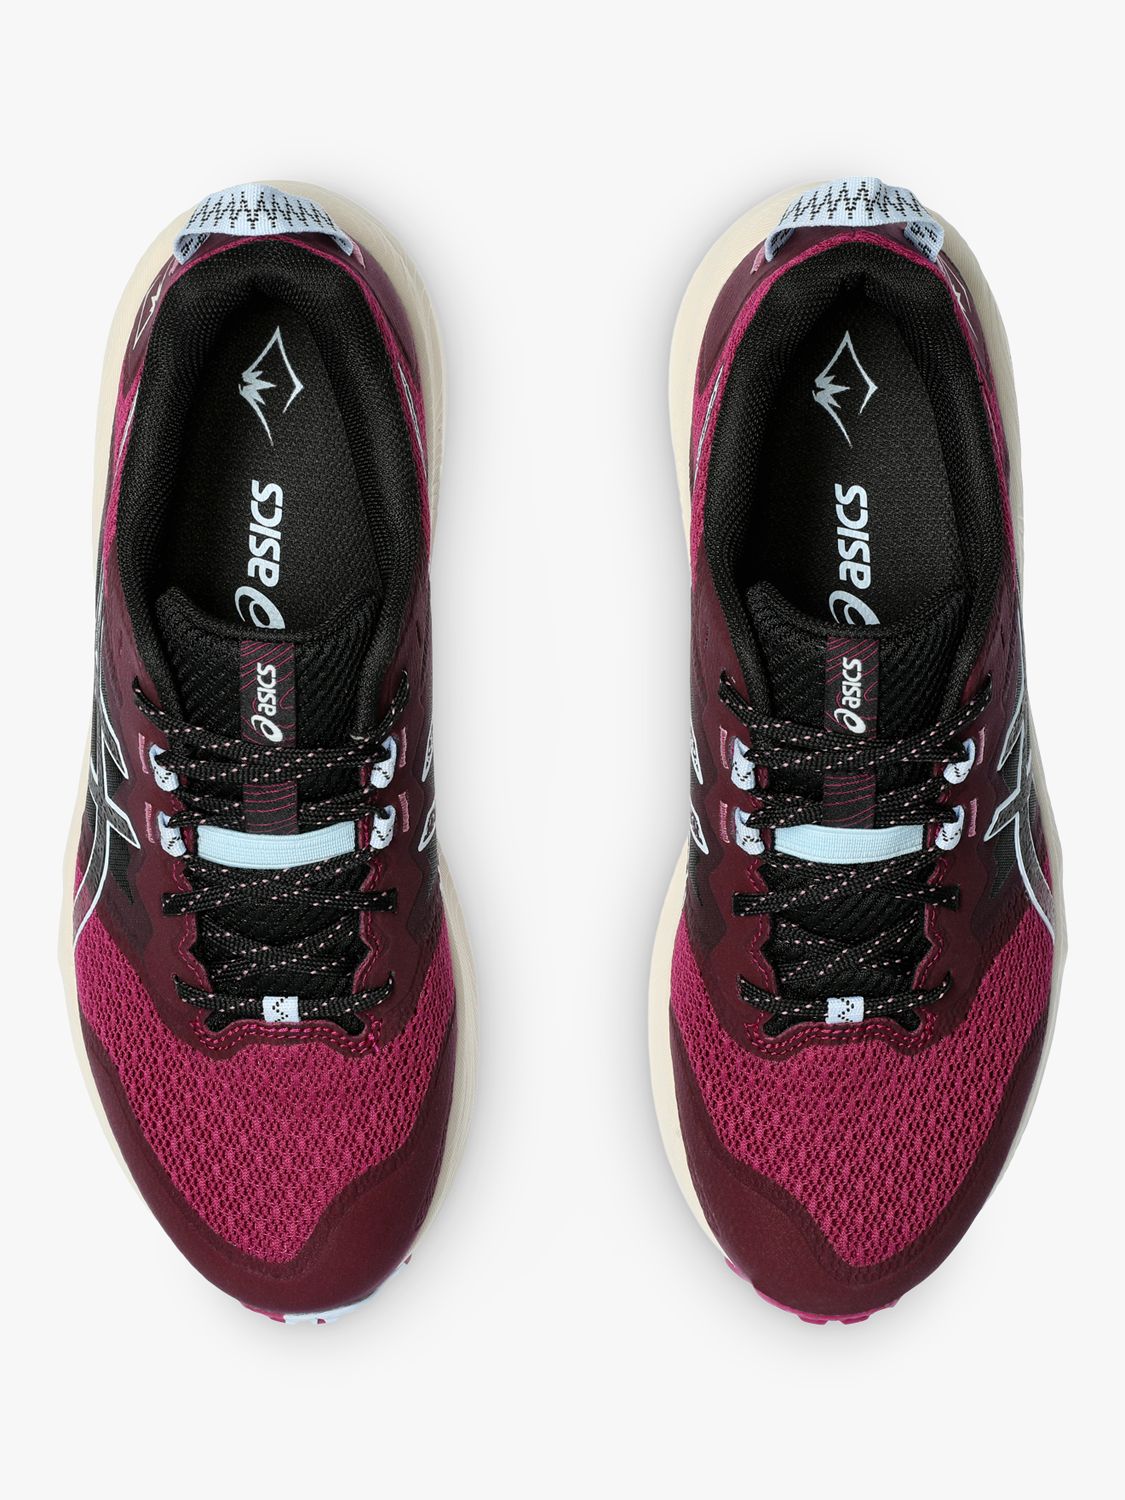 Buy ASICS GEL-TRABUCO™ TERRA 2 Women's Running Shoes, Blackberry/Blue Online at johnlewis.com